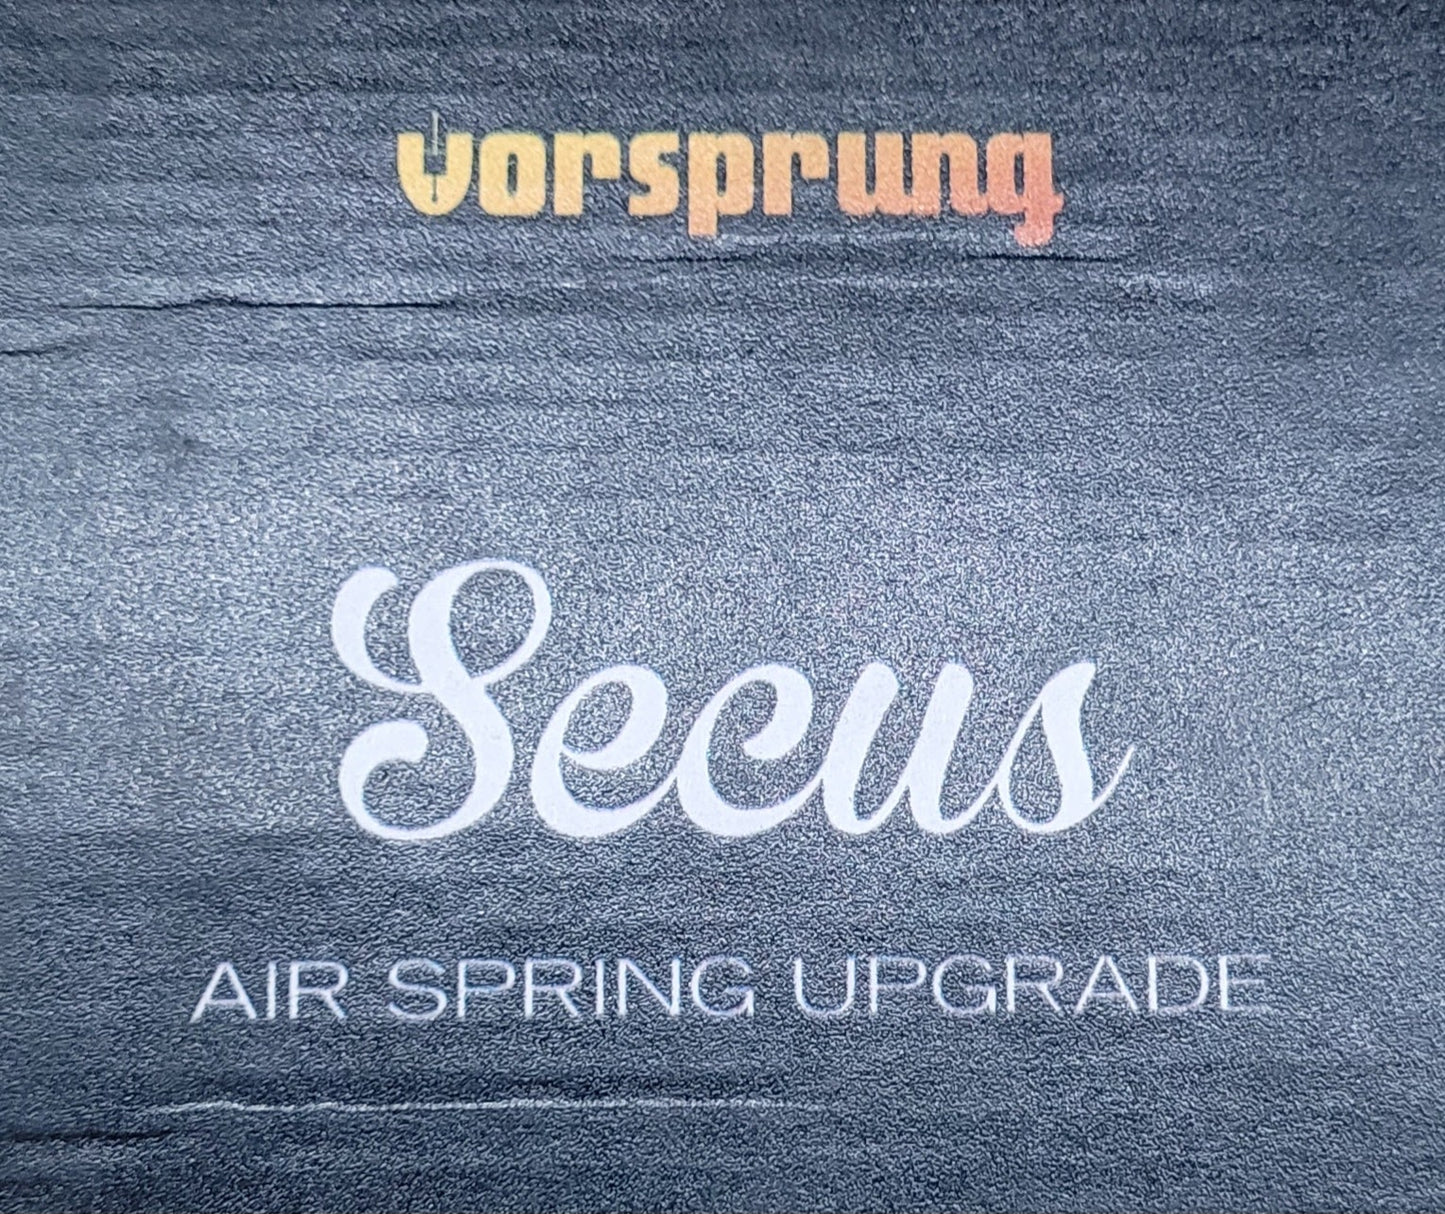 Vorsprung Secus Fork Air Spring Upgrade Kit